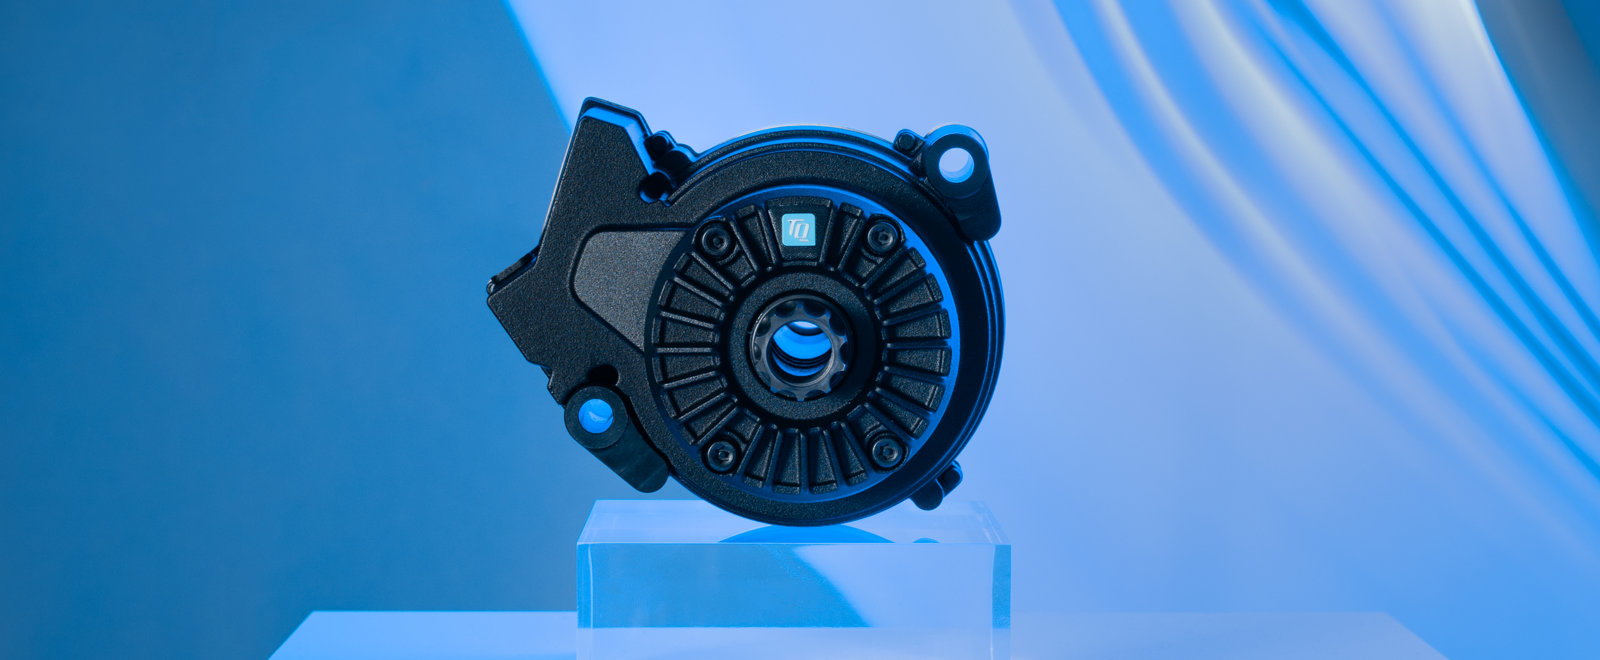 HPR50-Motor auf Podest vor blauem Hintergrund